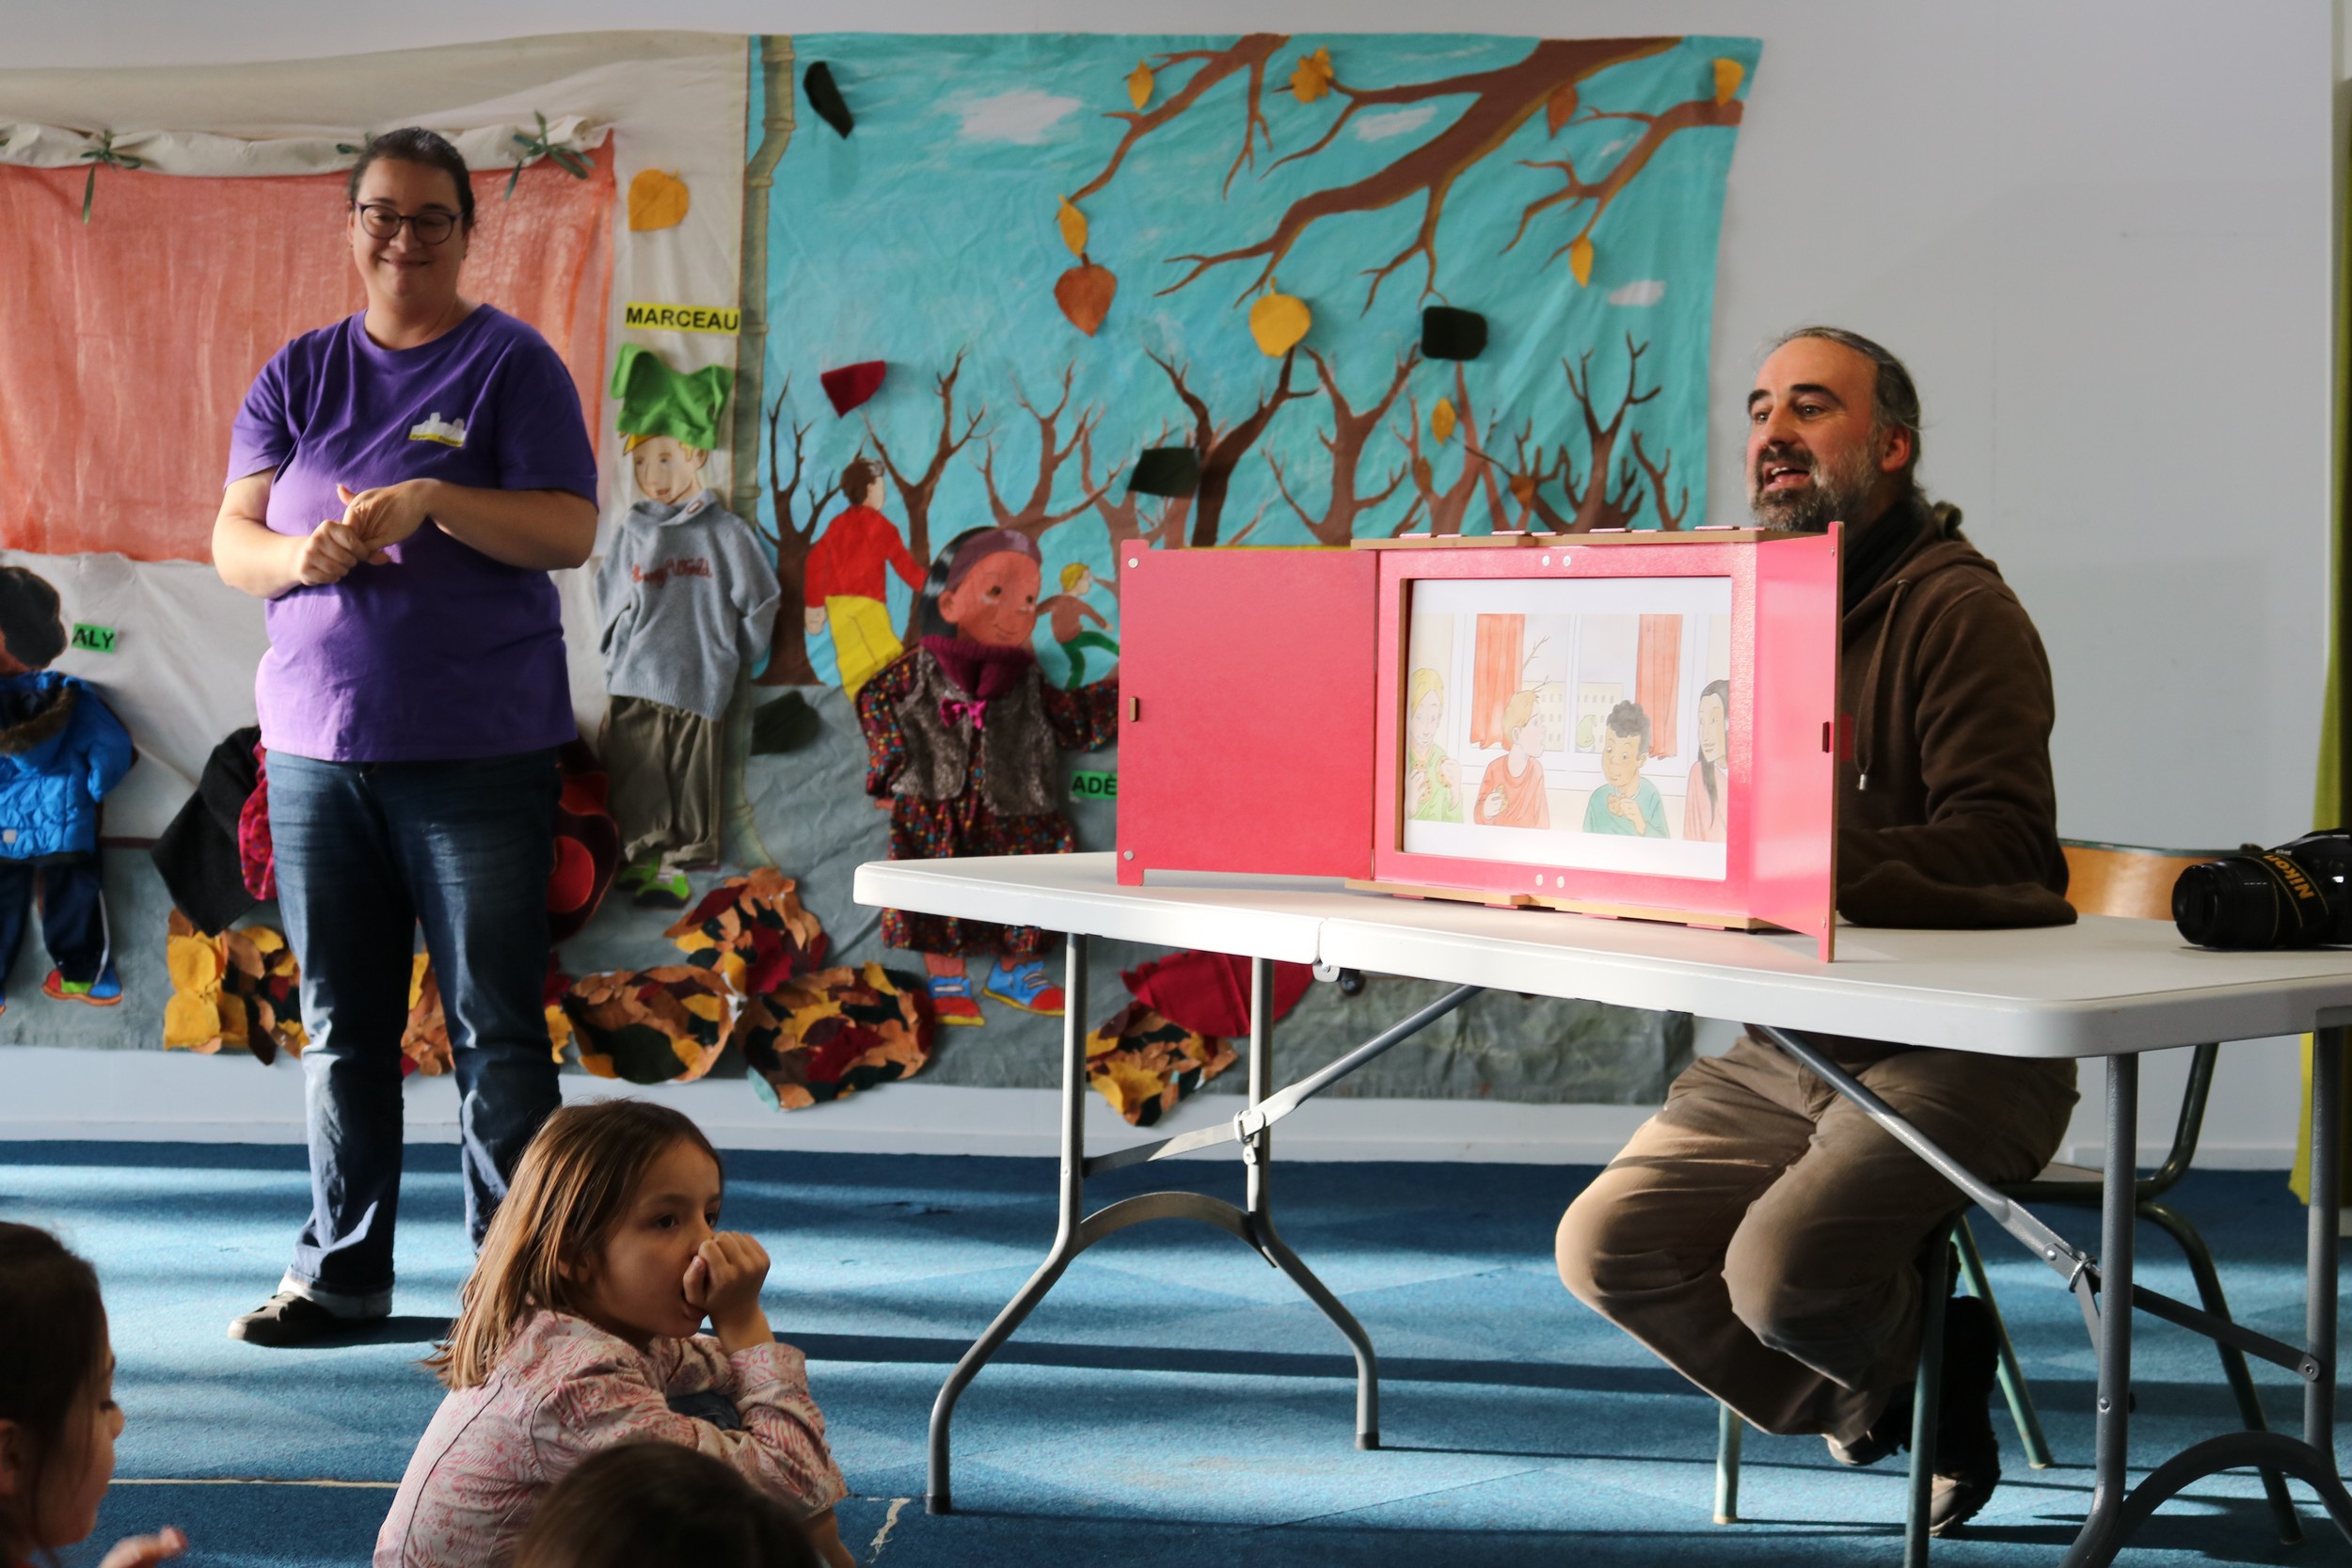 Le 4 décembre 2019, dans les locaux d’Agir La Rédingote à Alençon, les enfants de l’IME La Passerelle et du Centre Paul Gauguin ont fait œuvre collective pour animer leur première pièce de théâtre sur papier.